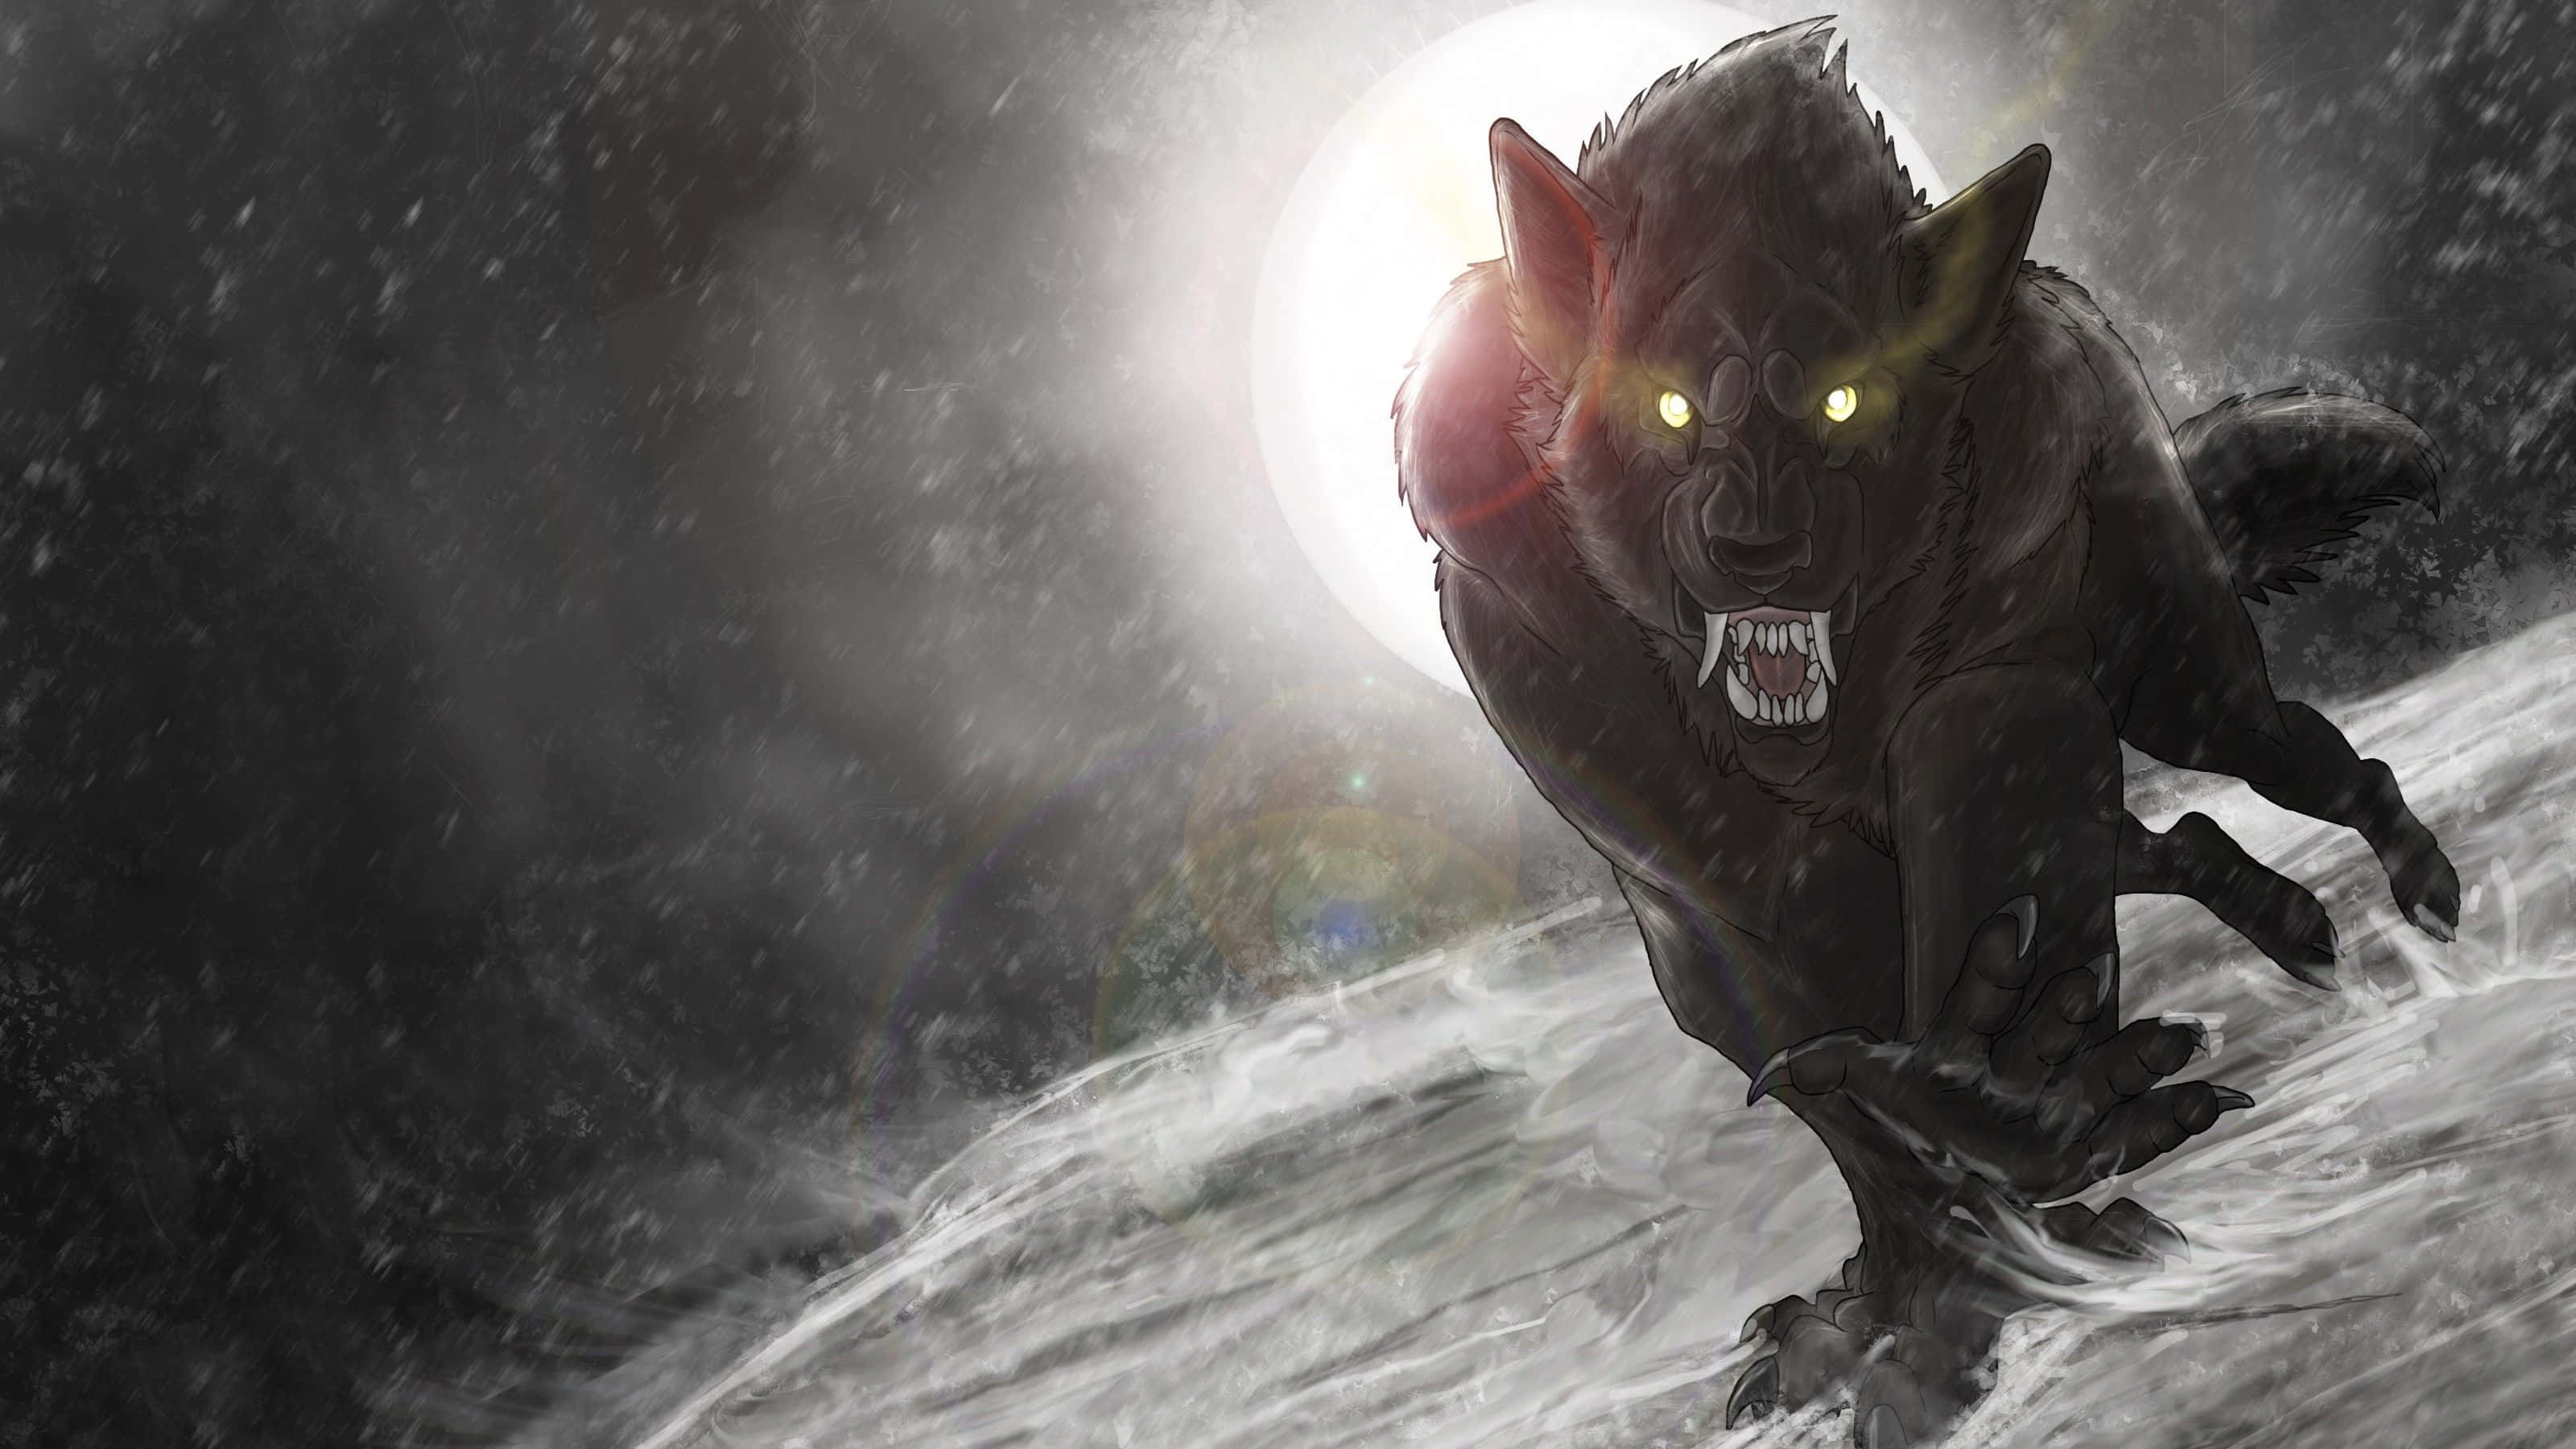 Einmysteriöser Werwolf Lauert Im Schatten.